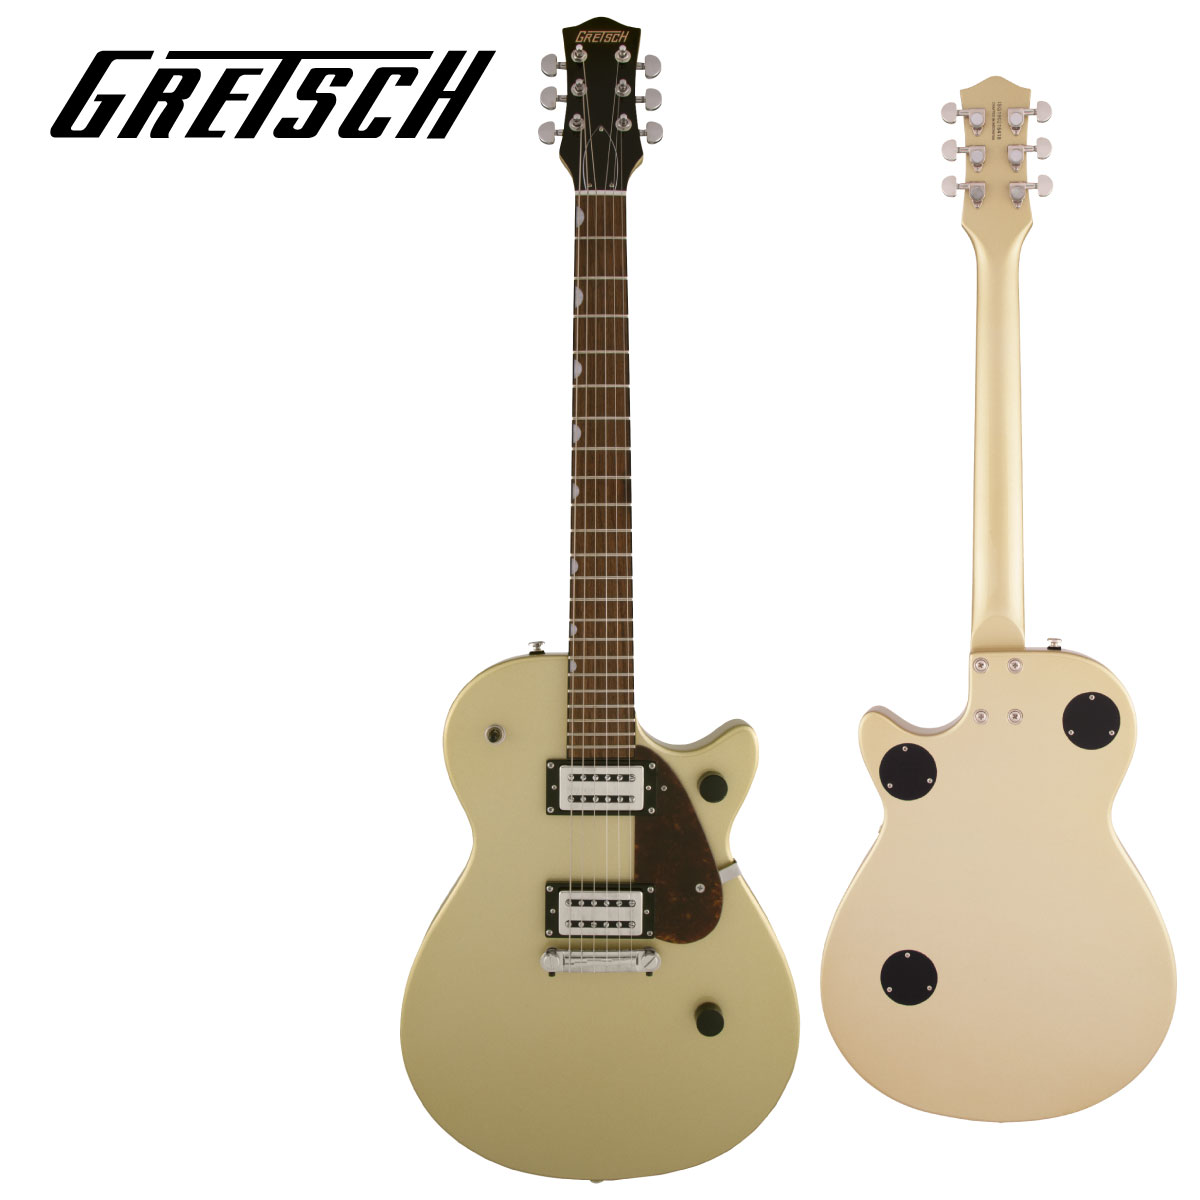 ショップ 次回入荷分 初売り 予約受付中 Gretsch G2210 Streamliner Junior Jet Club -Golddust- 新品 ゴールド Guitar ギター グレッチ 金